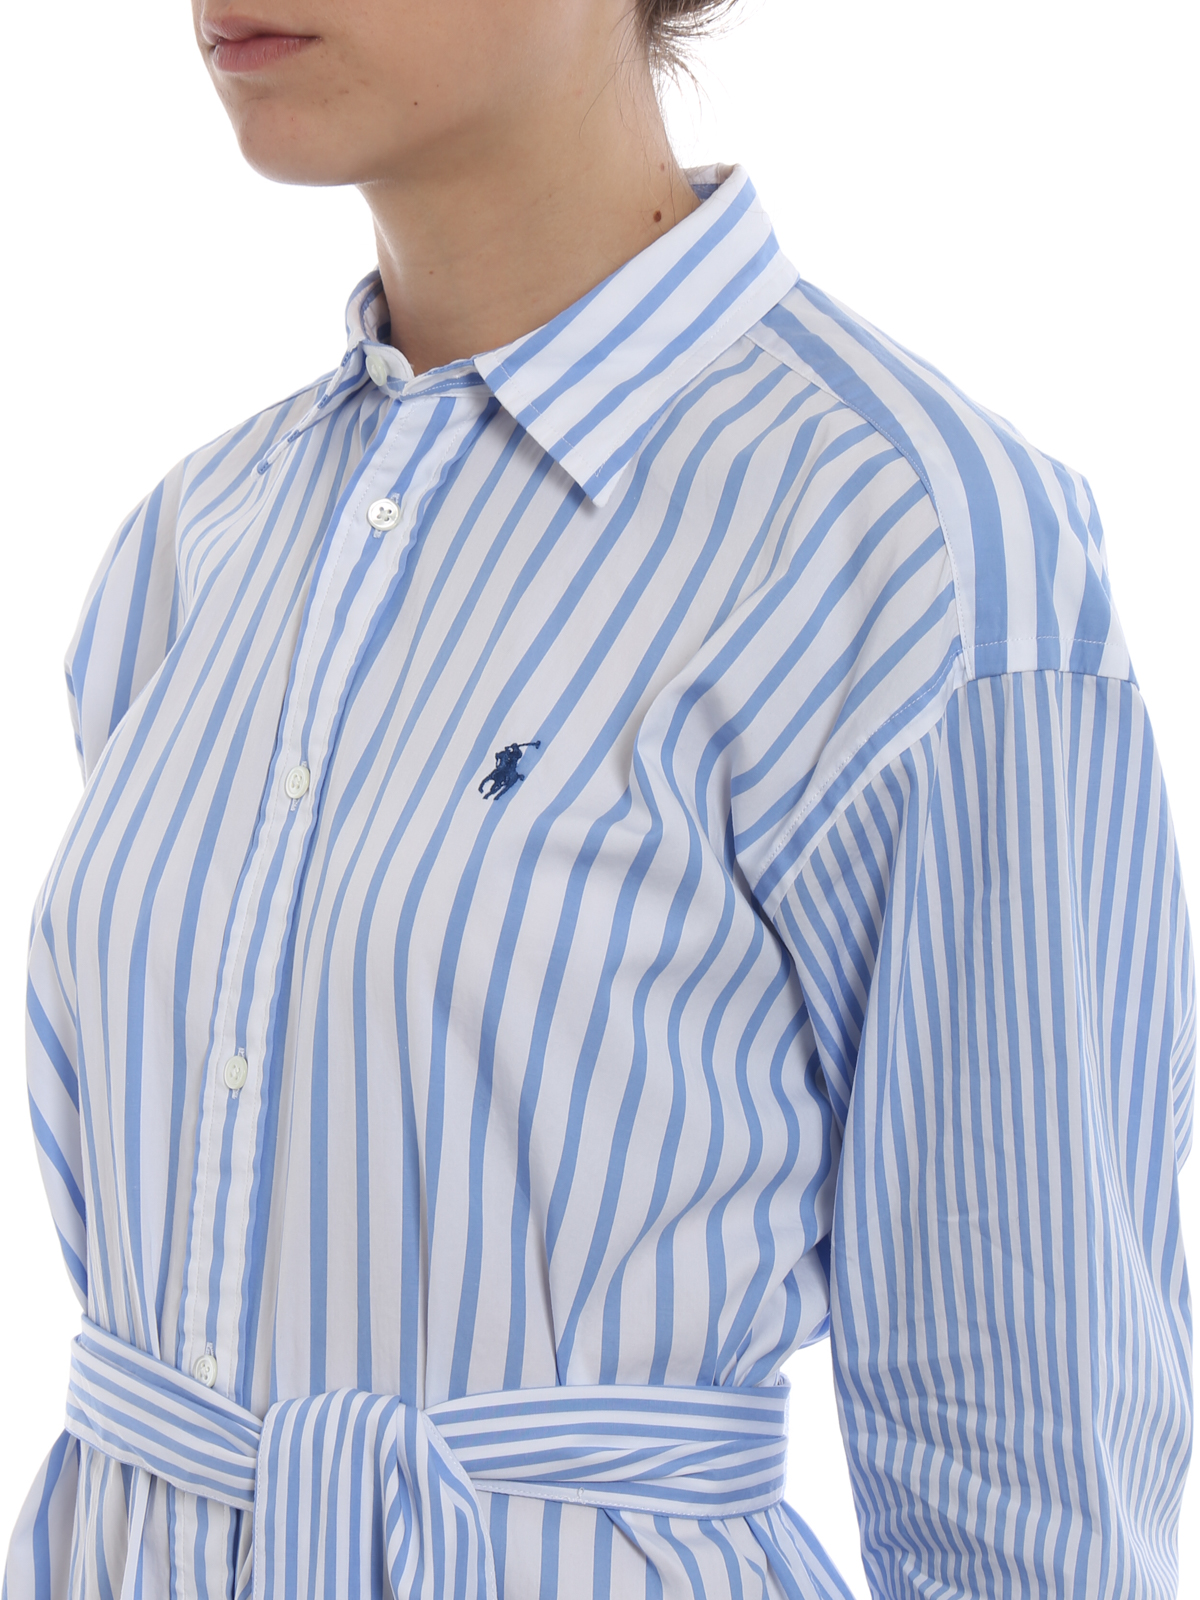 polo ralph lauren striped cotton shirtdress